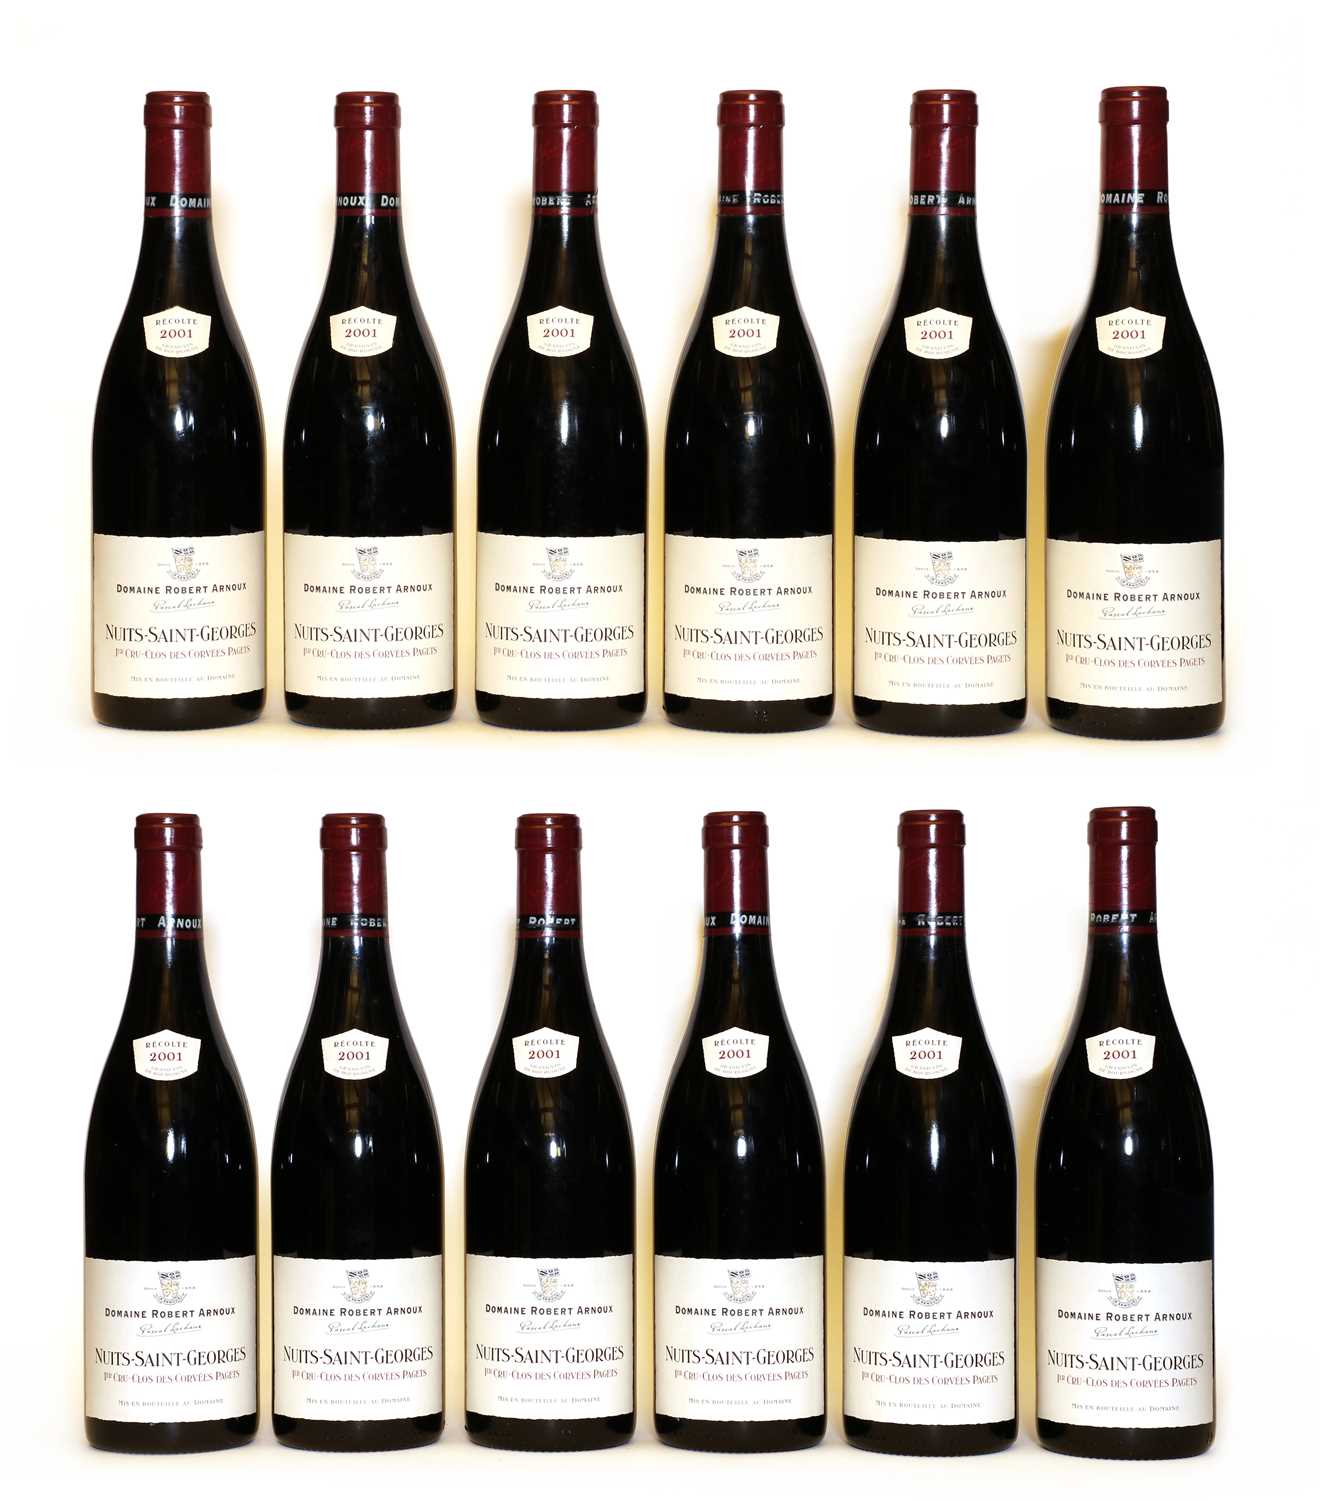 Lot 61 - Nuits-Saint-Georges, 1er Cru, Clos des Corvees Pagets, Domaine Robert Arnoux, 2001, 12 bottles